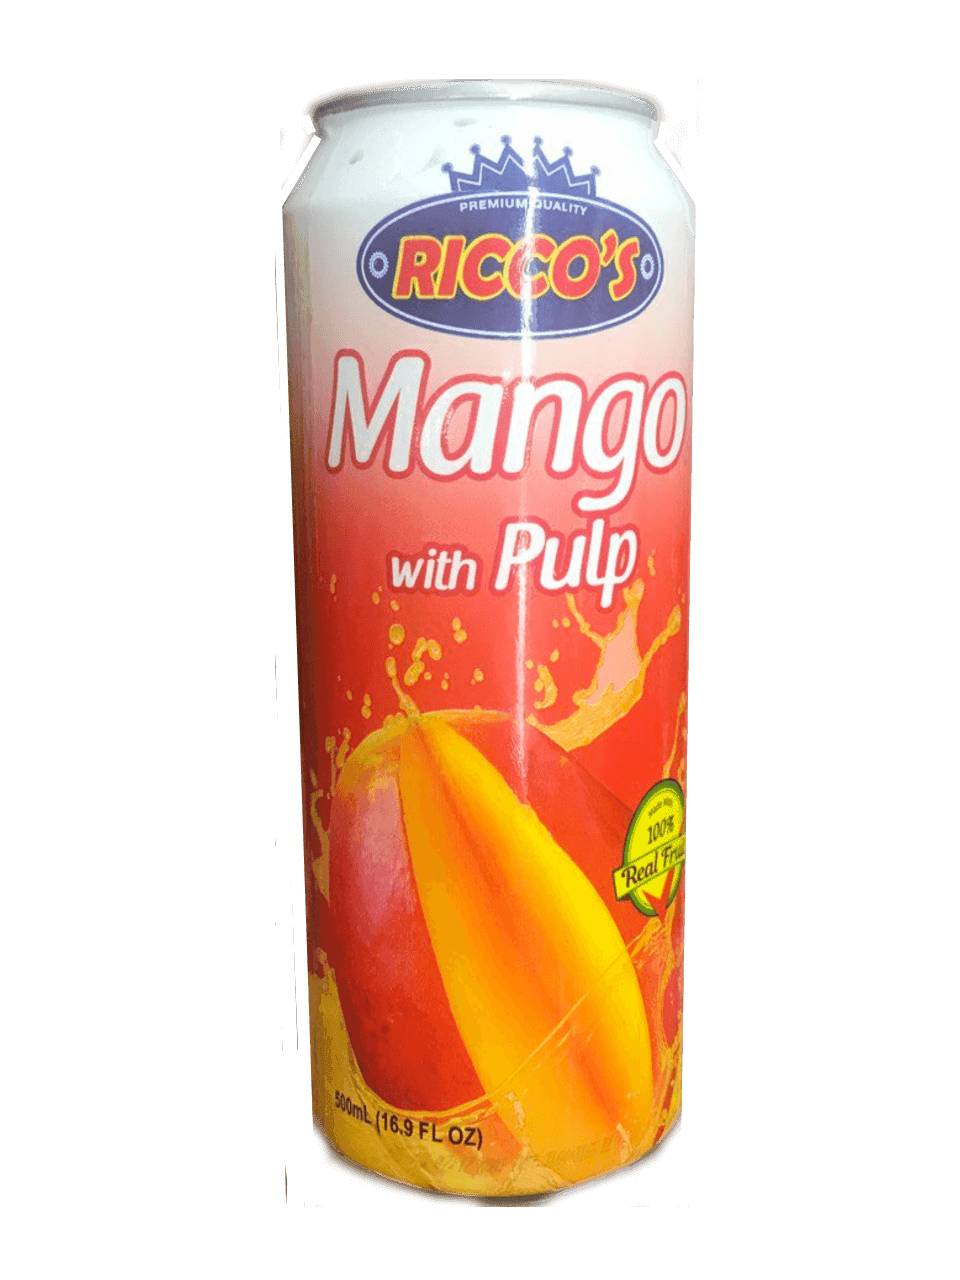 Ricco's - Mango with Pulp 16.5 fl oz